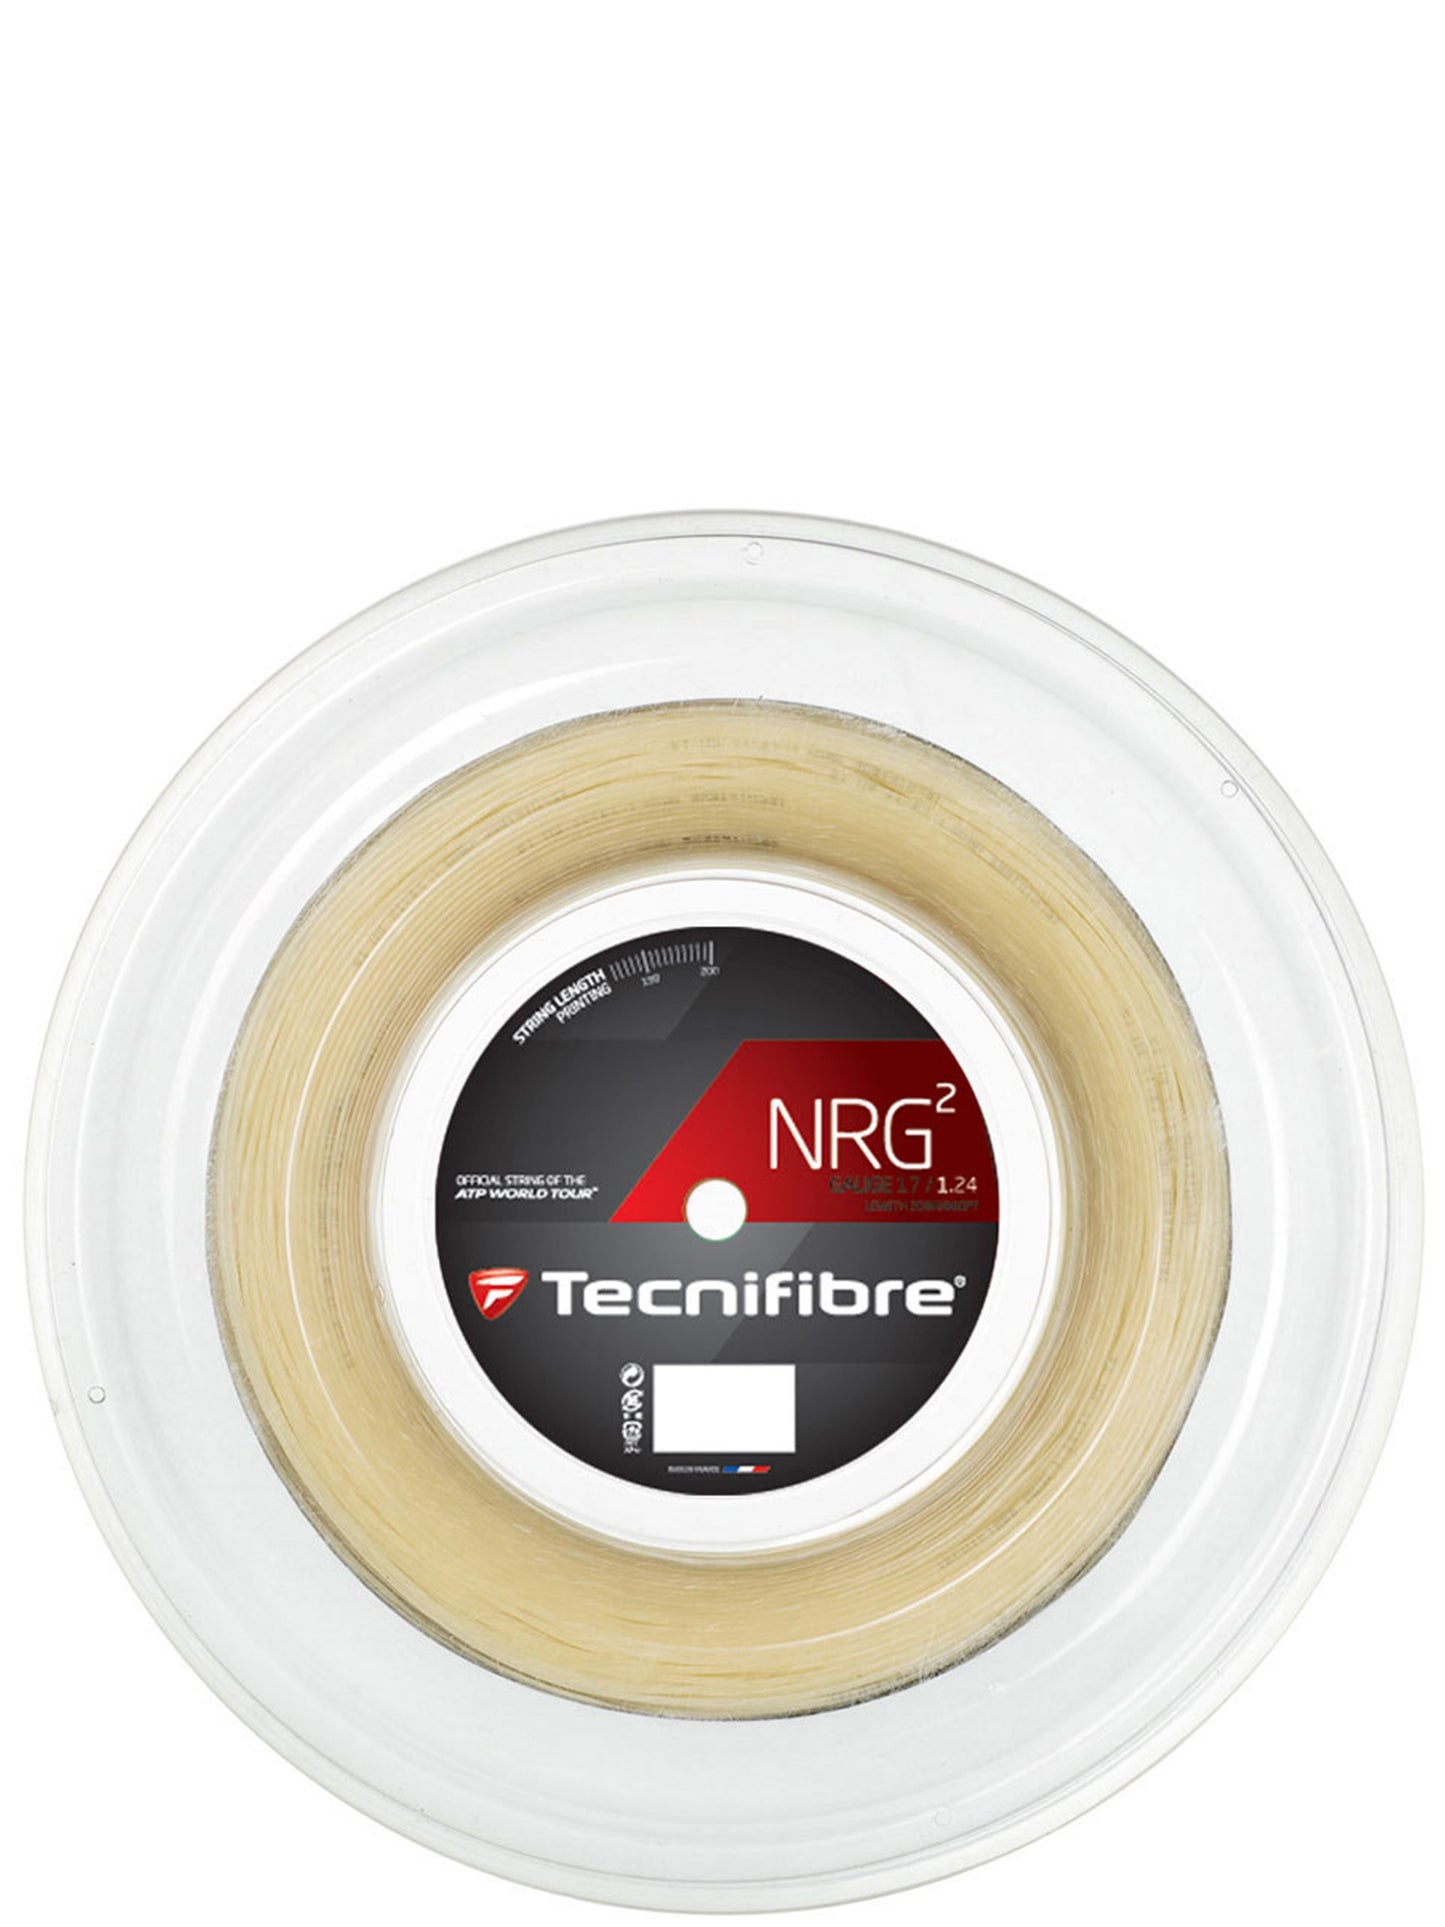 Tecnifibre reel NRG² 124/17 Natural (200M)